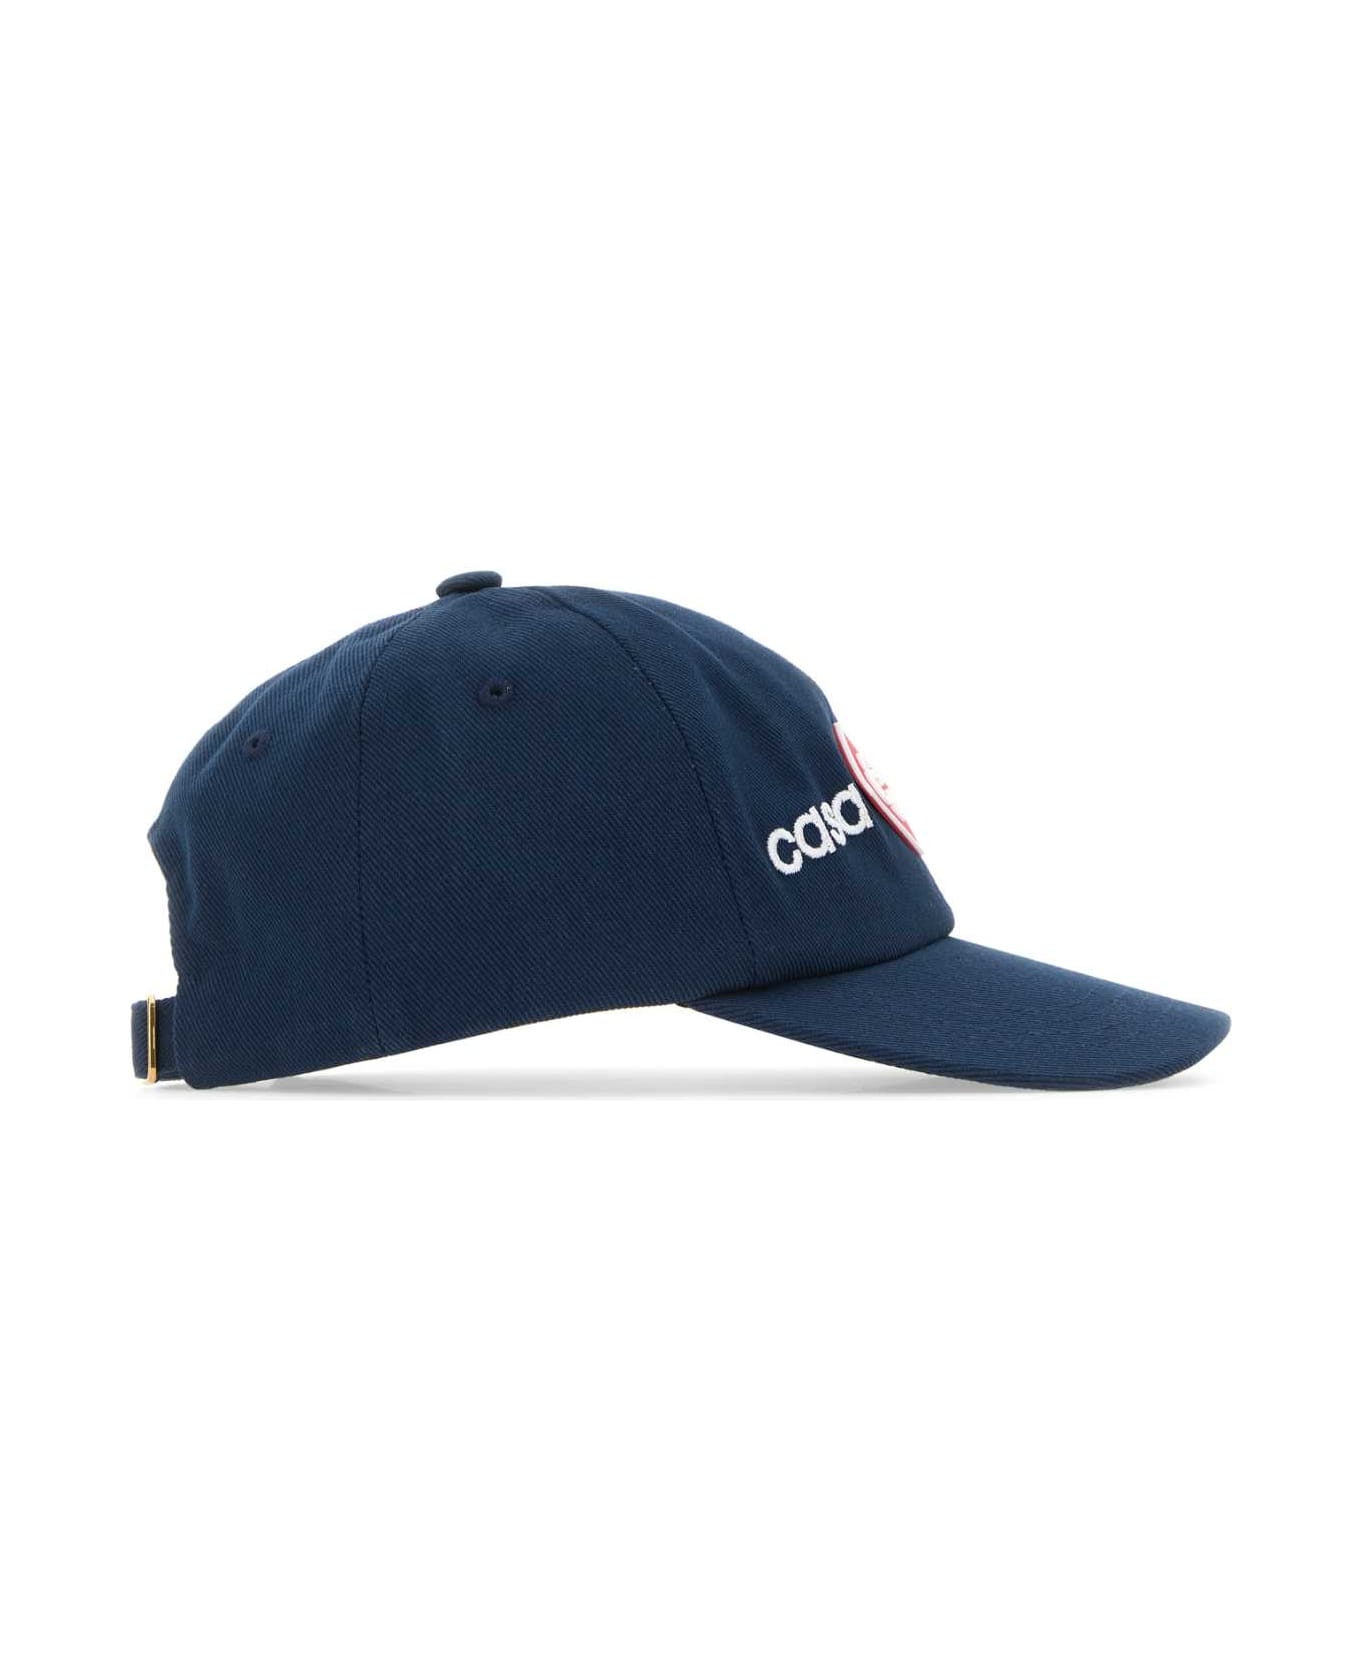 Casablanca Navy Blue Cotton Baseball Cap - CASSPOICO 帽子